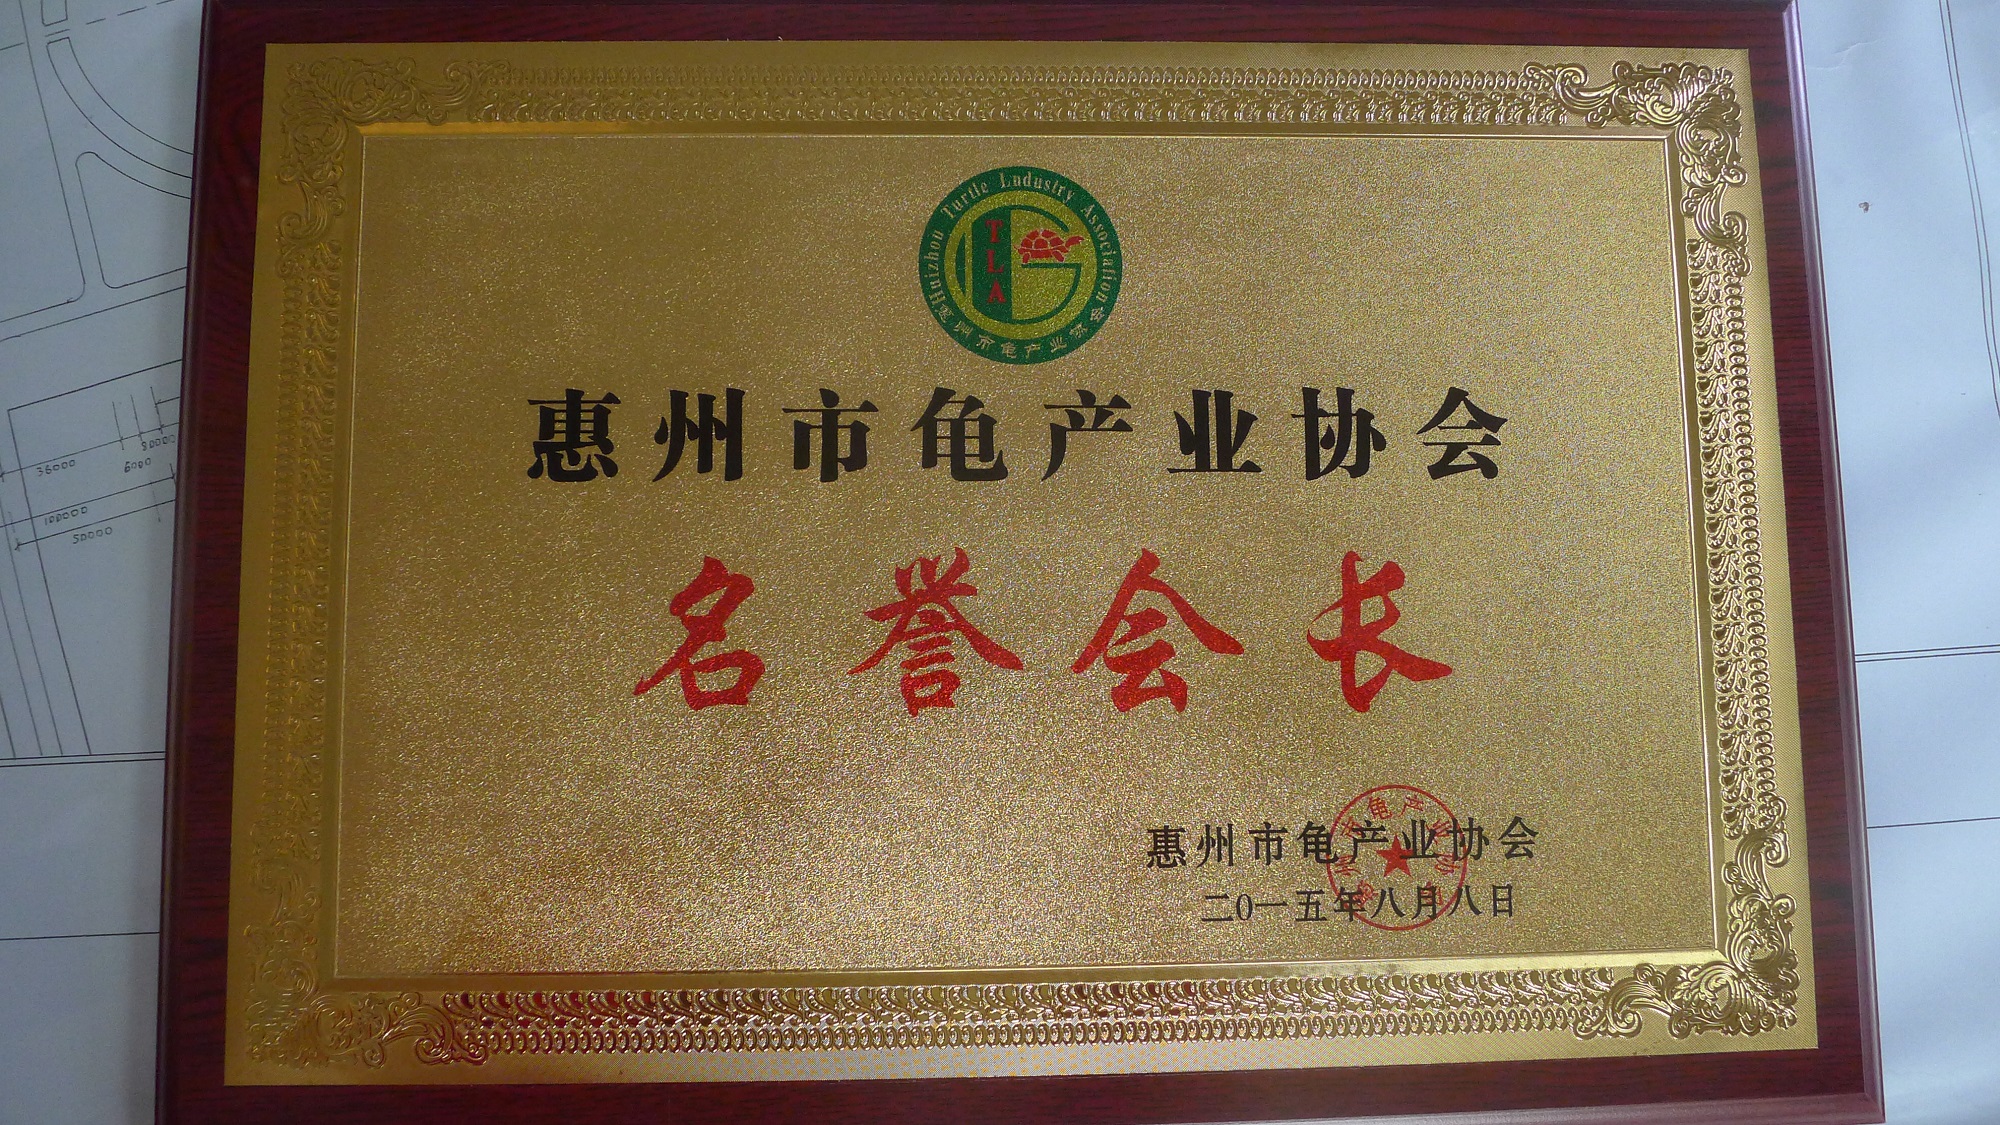 惠州市龜產業協會名譽會長牌匾